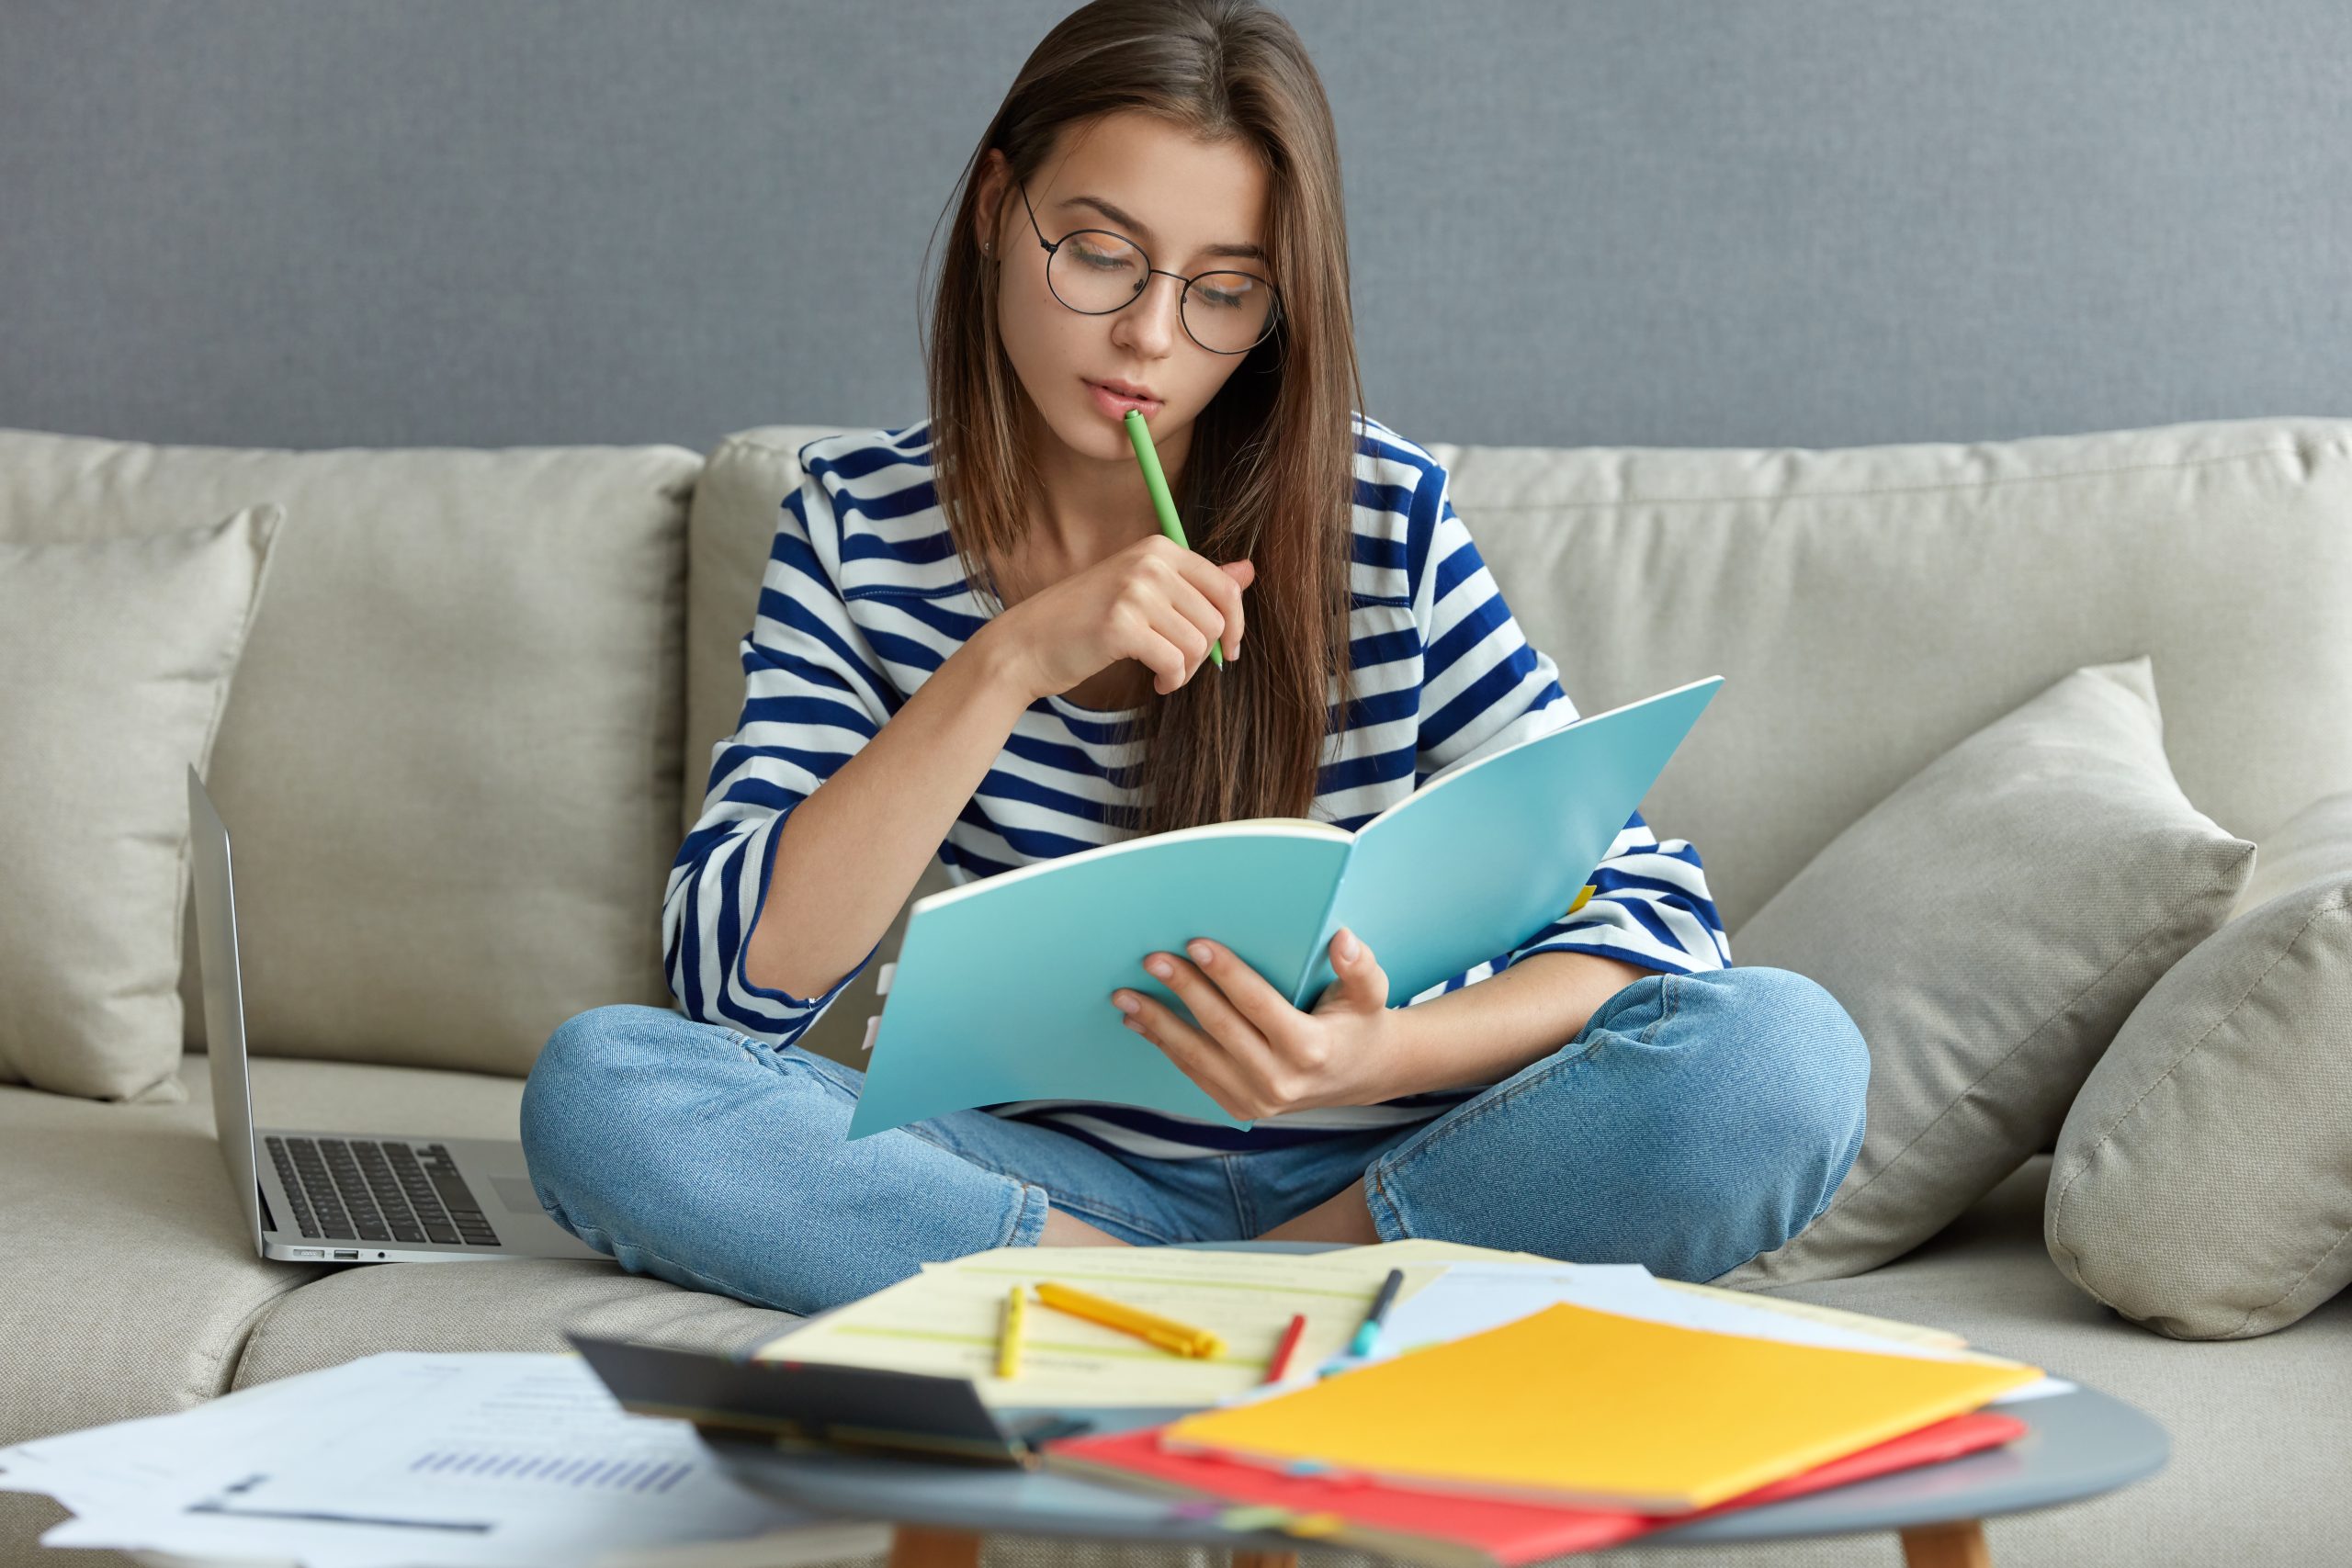 Adolescente estuda concentrada conteúdo de livro em sua mão sentada no sofá diante livros e cadernos